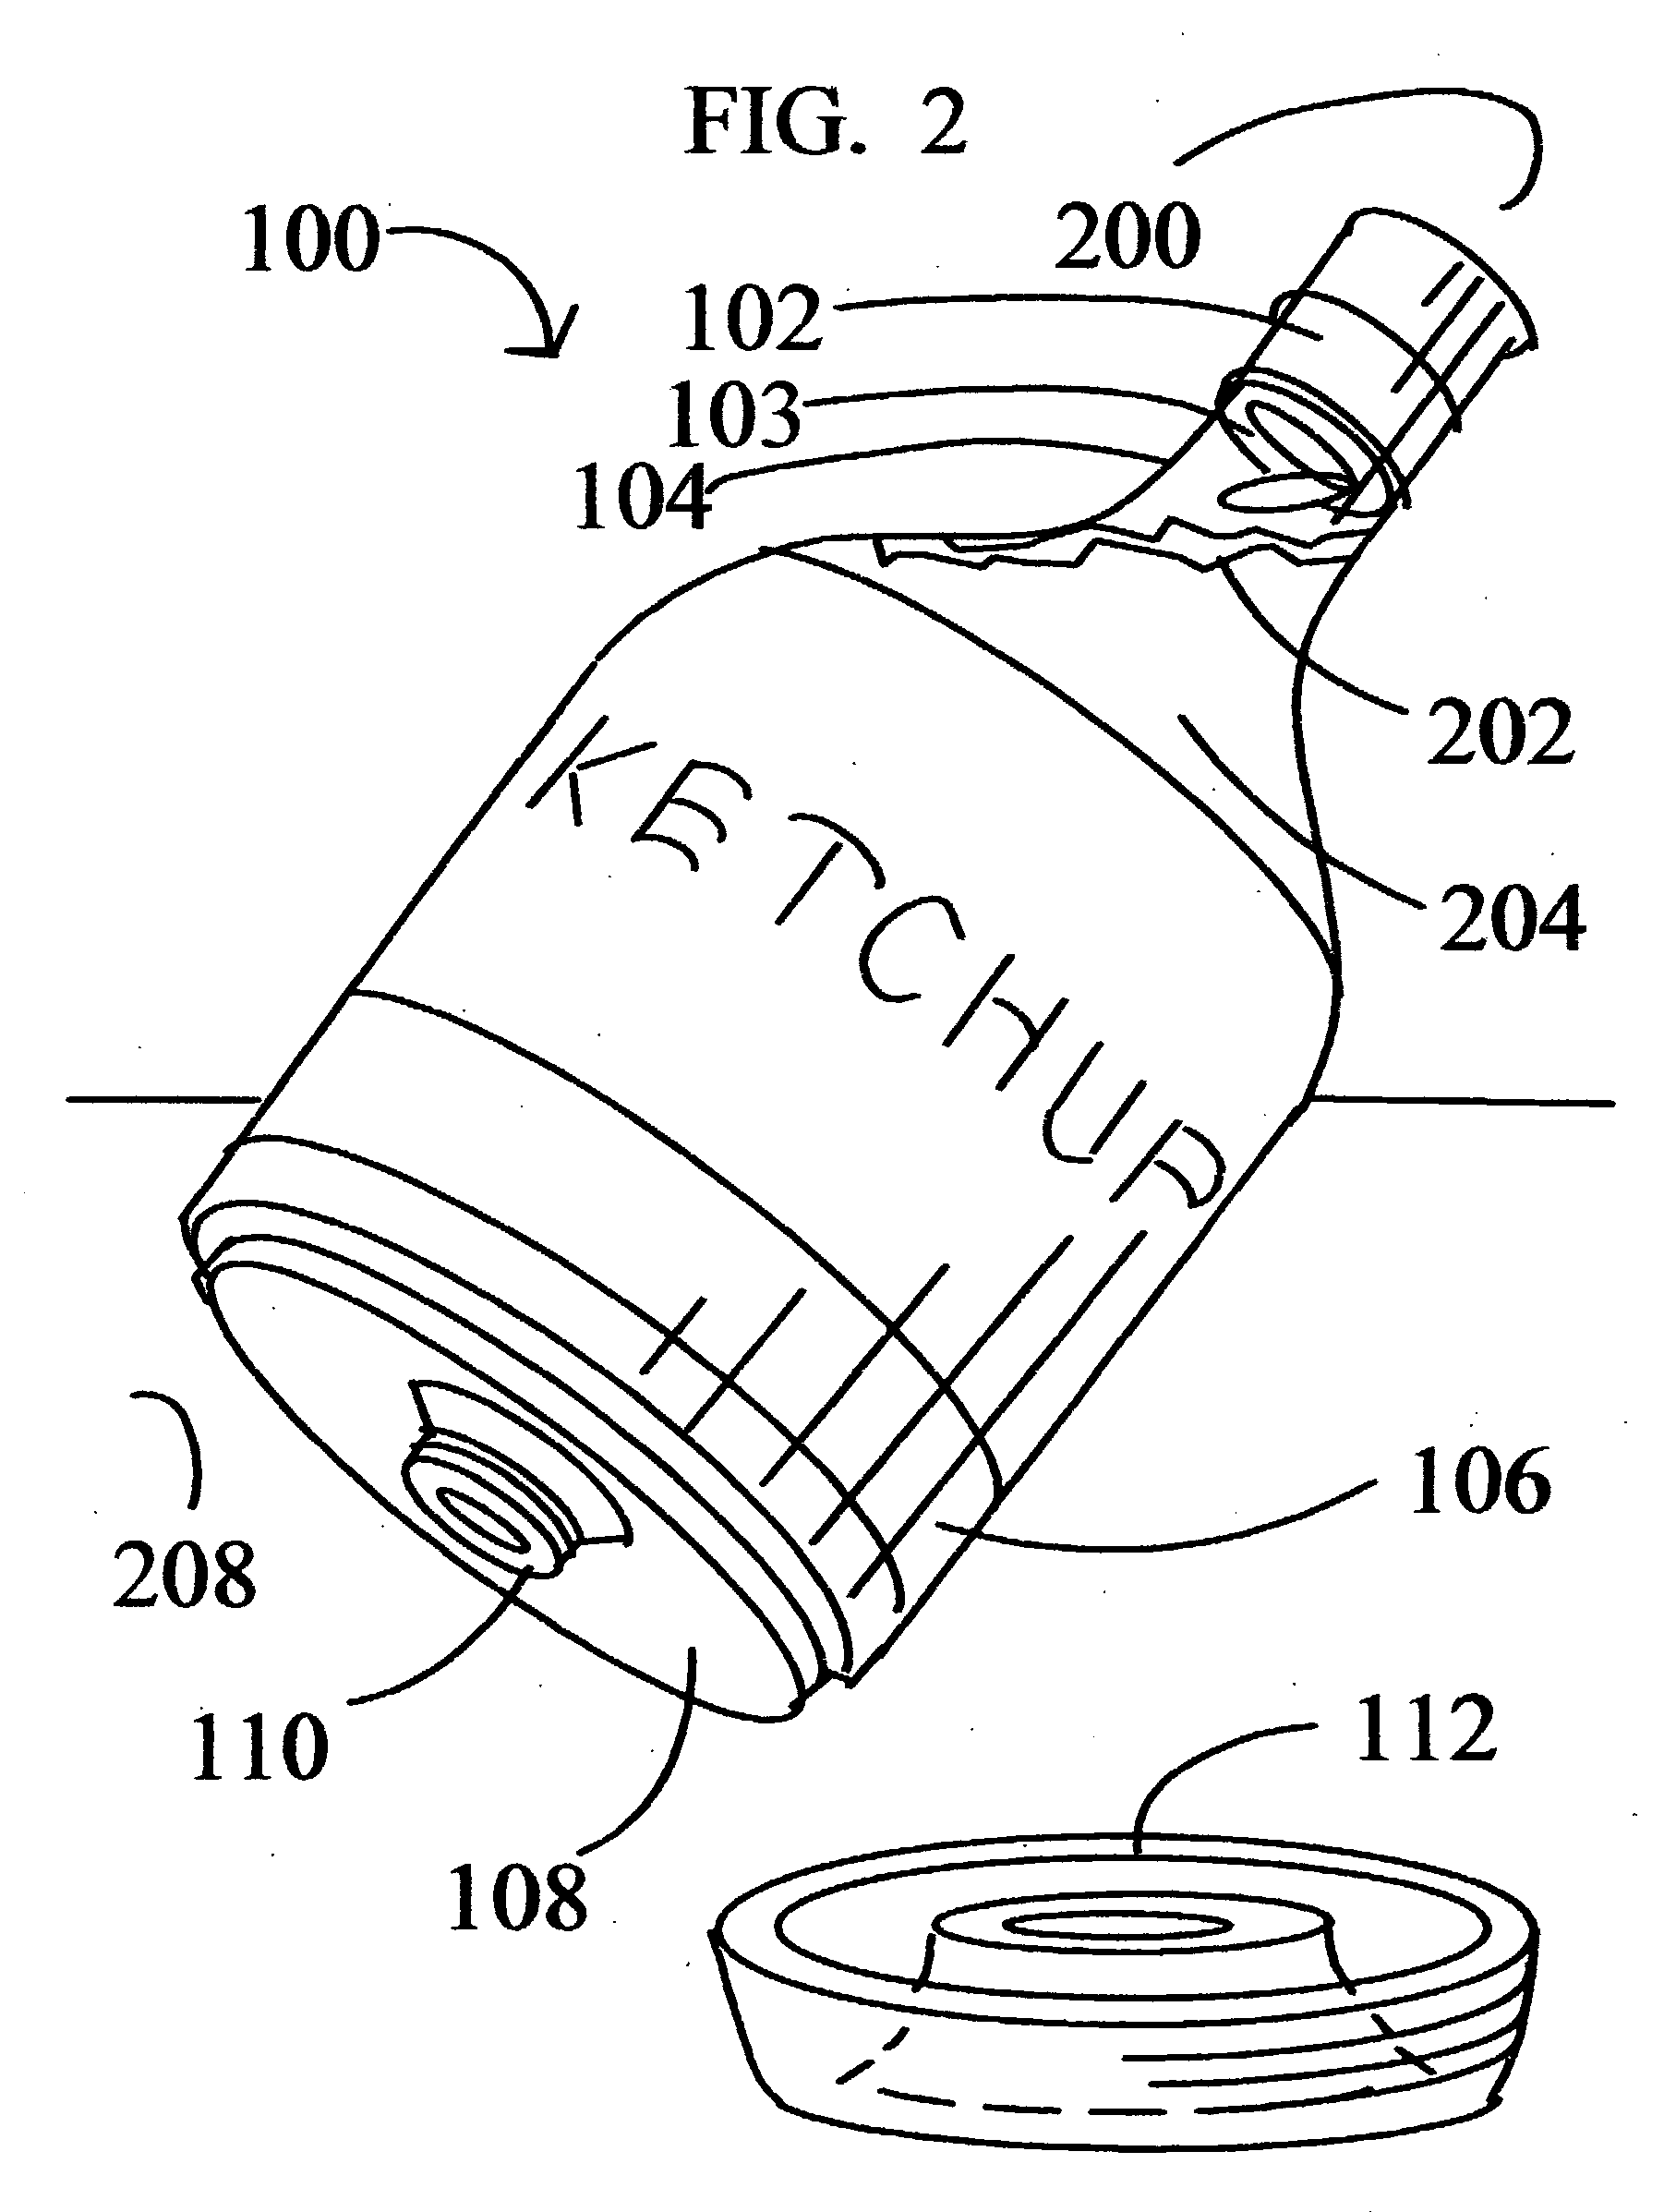 Gravity-fed liquid chemical dispensing bottle